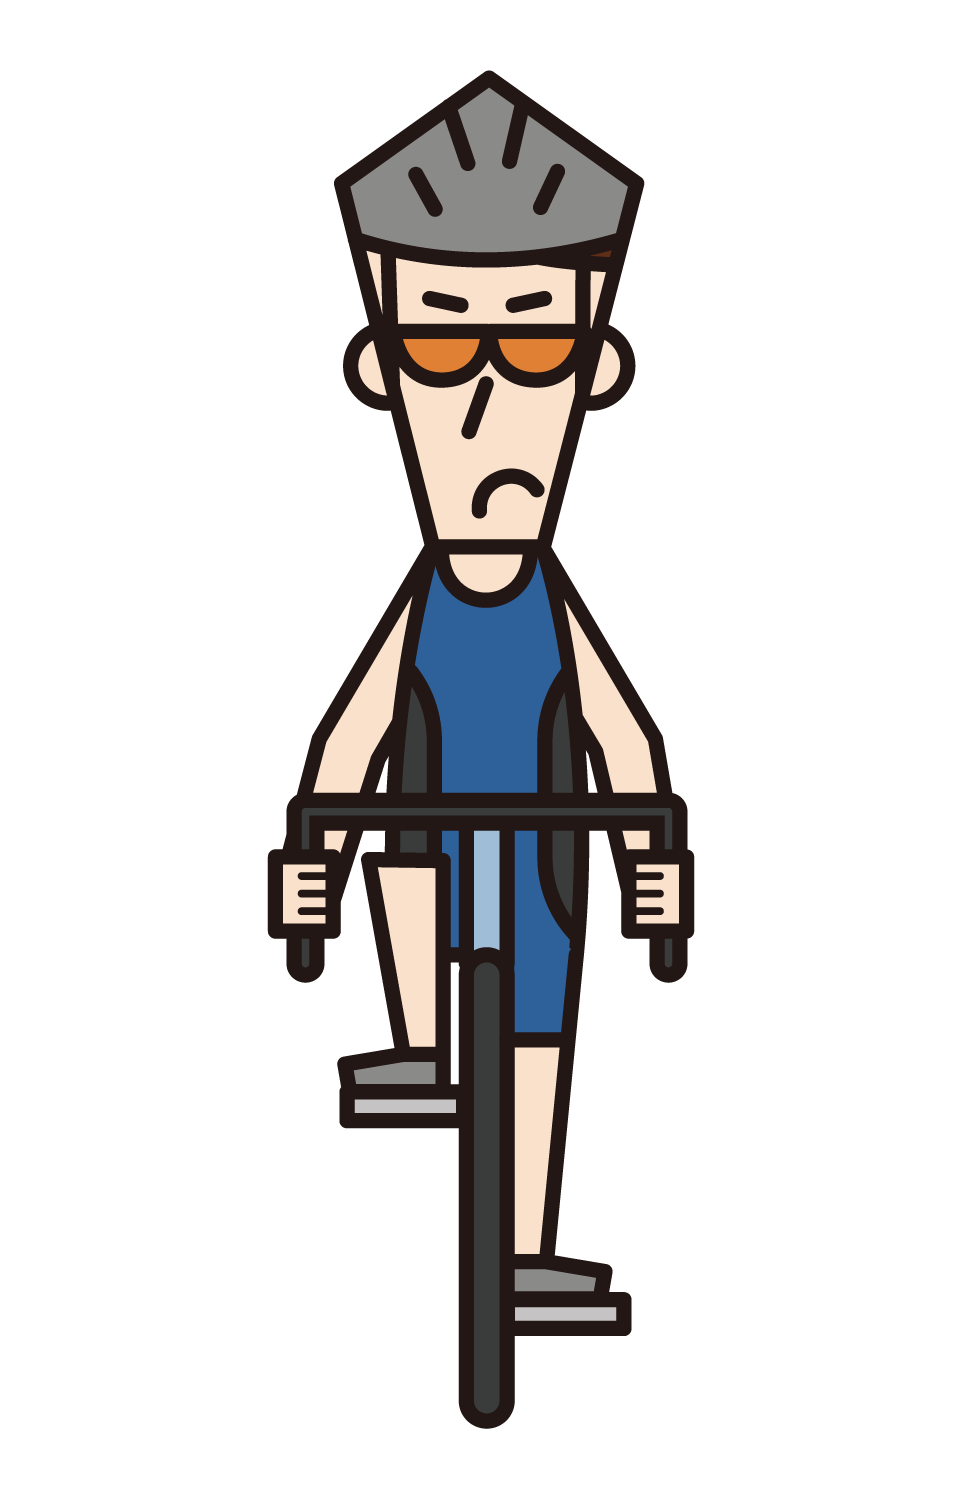 トライアスロン・自転車競技の選手（男性）のイラスト